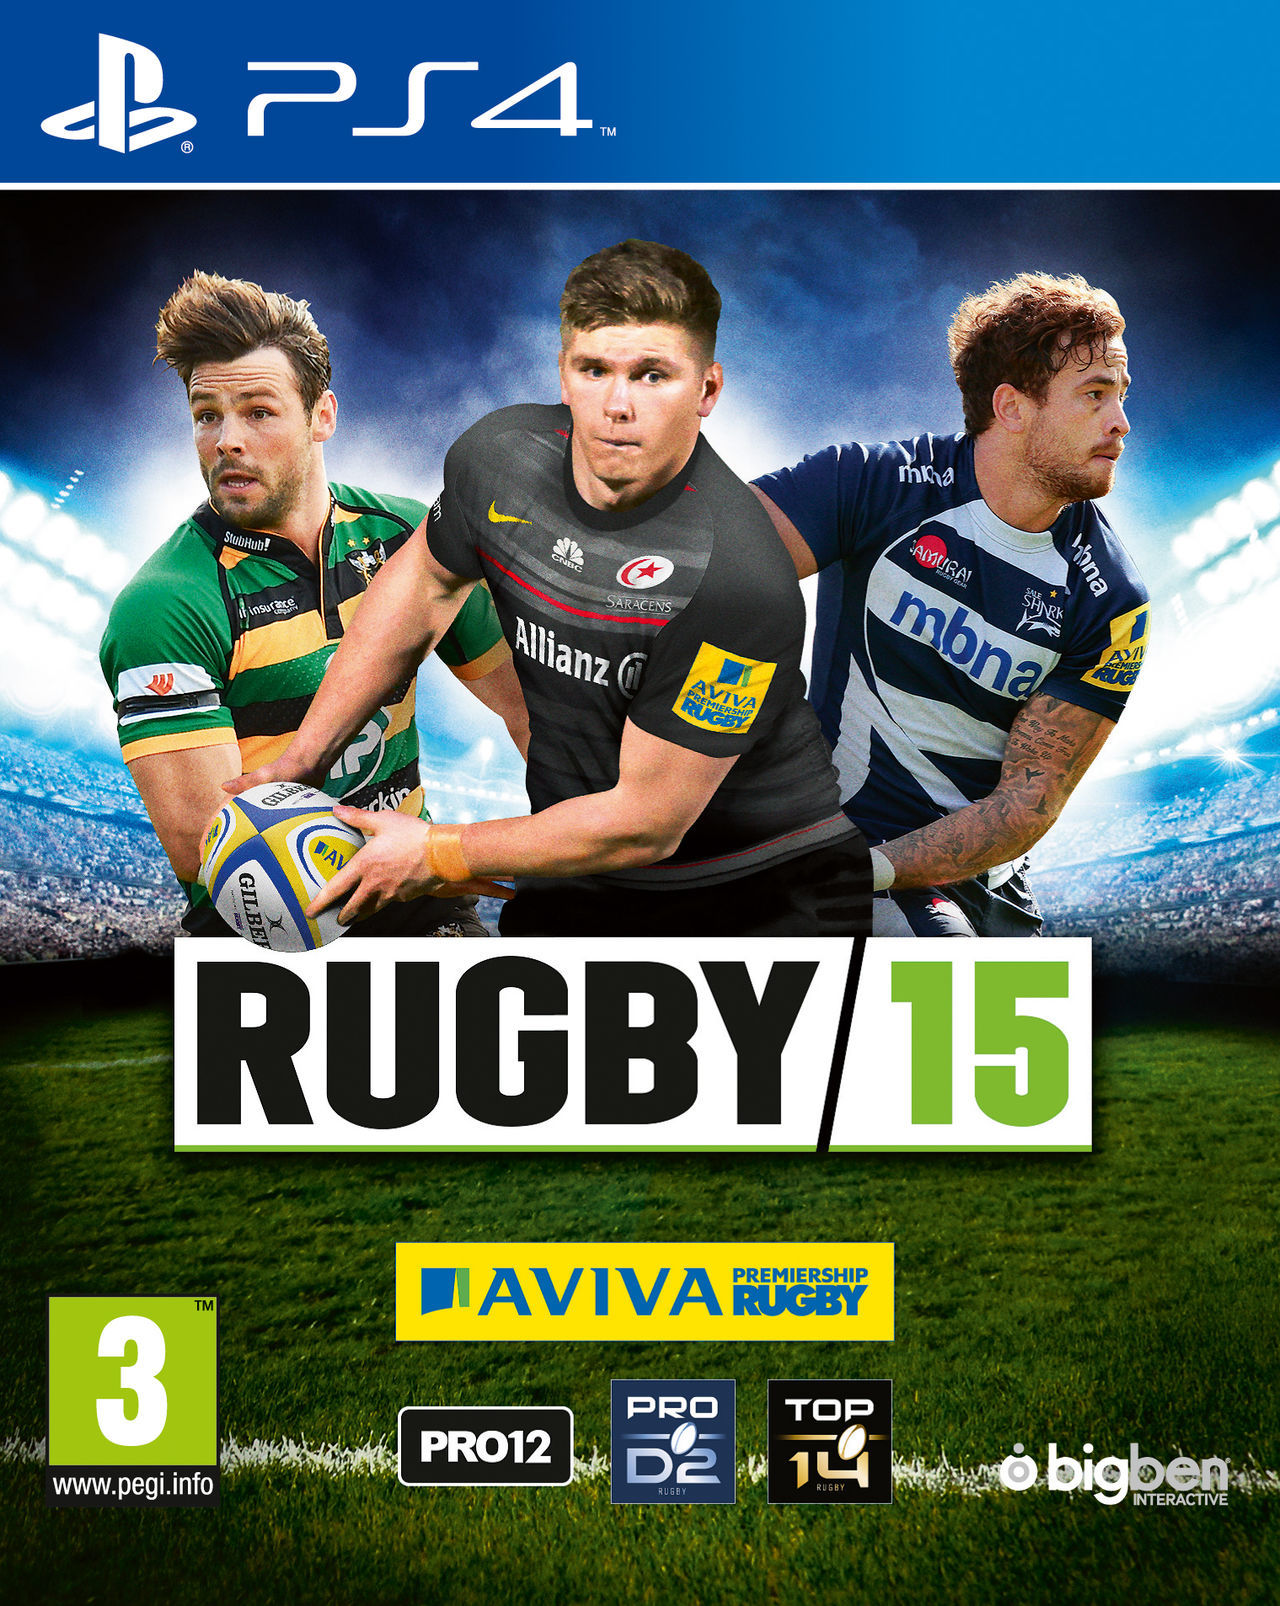 Las mejores ofertas en Sony PlayStation 4 juegos de video de Rugby